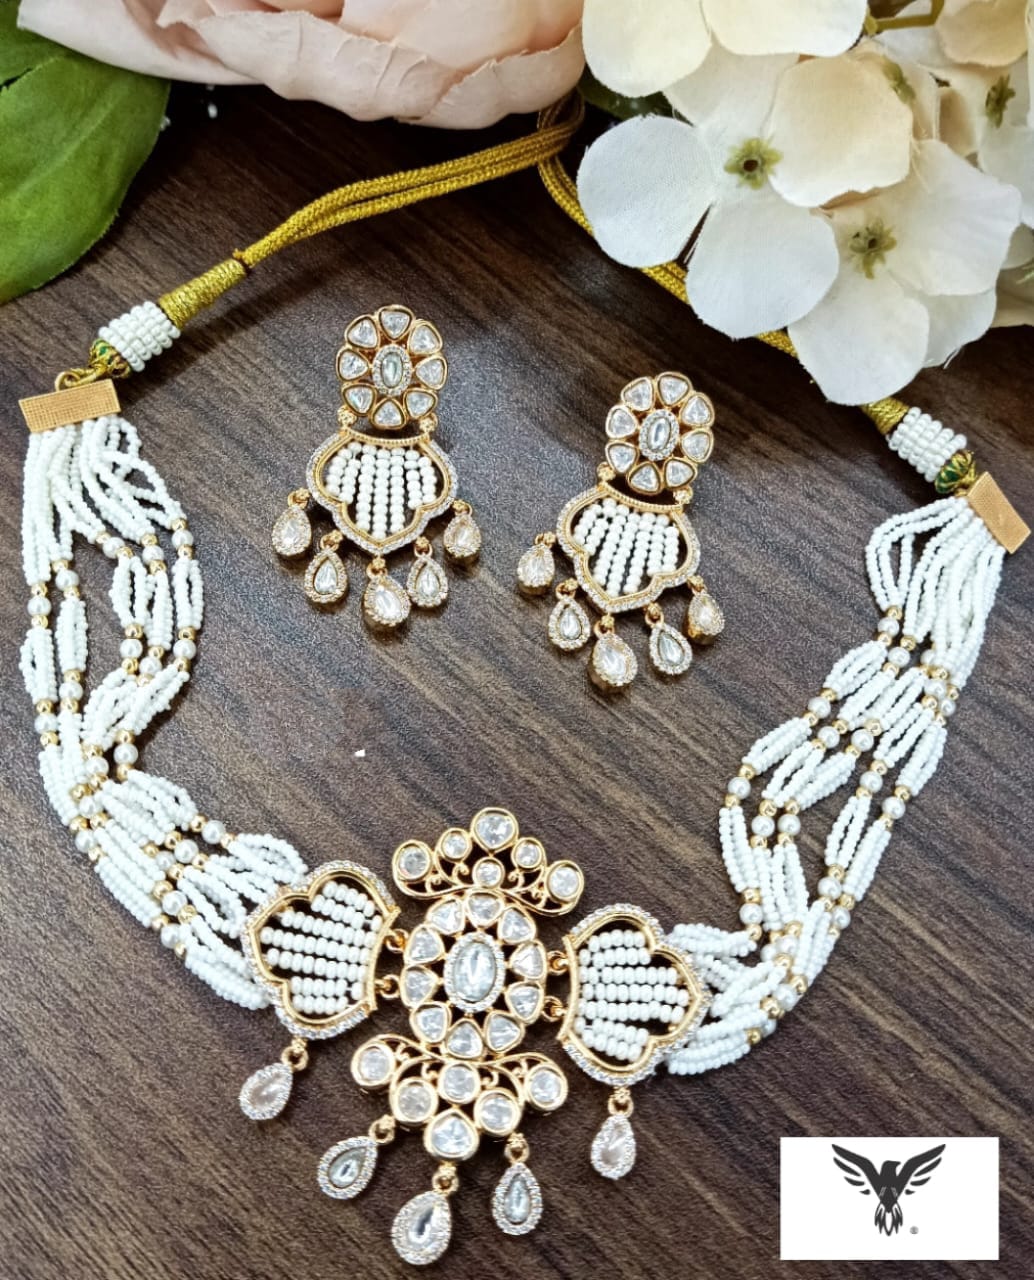 Daksha kundan choker necklace with earrings in mosanite For Women